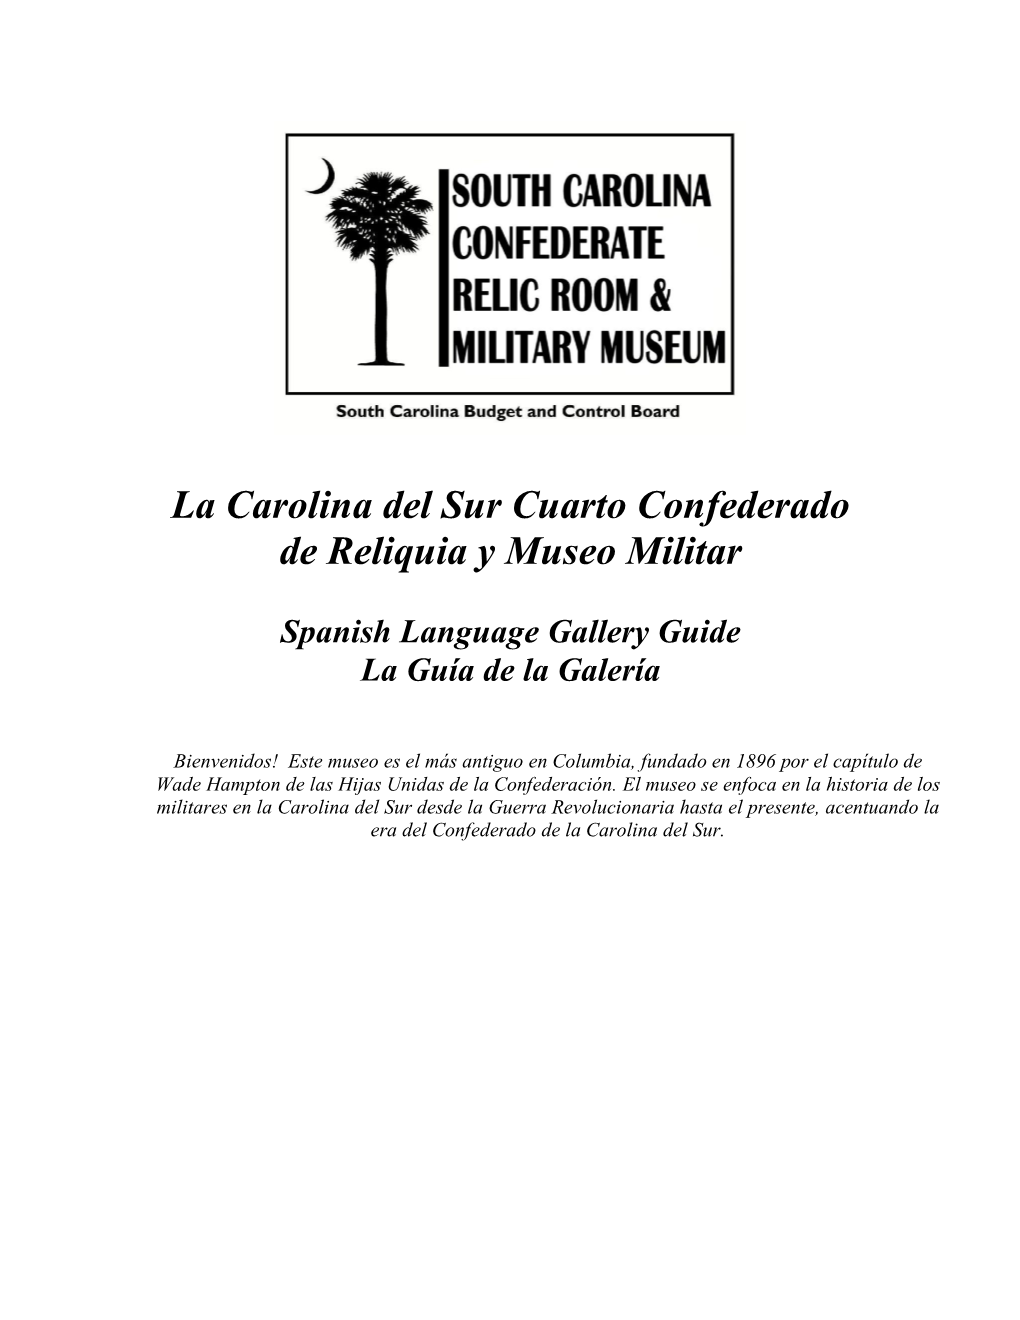 La Carolina Del Sur Cuarto Confederado De Reliquia Y Museo Militar